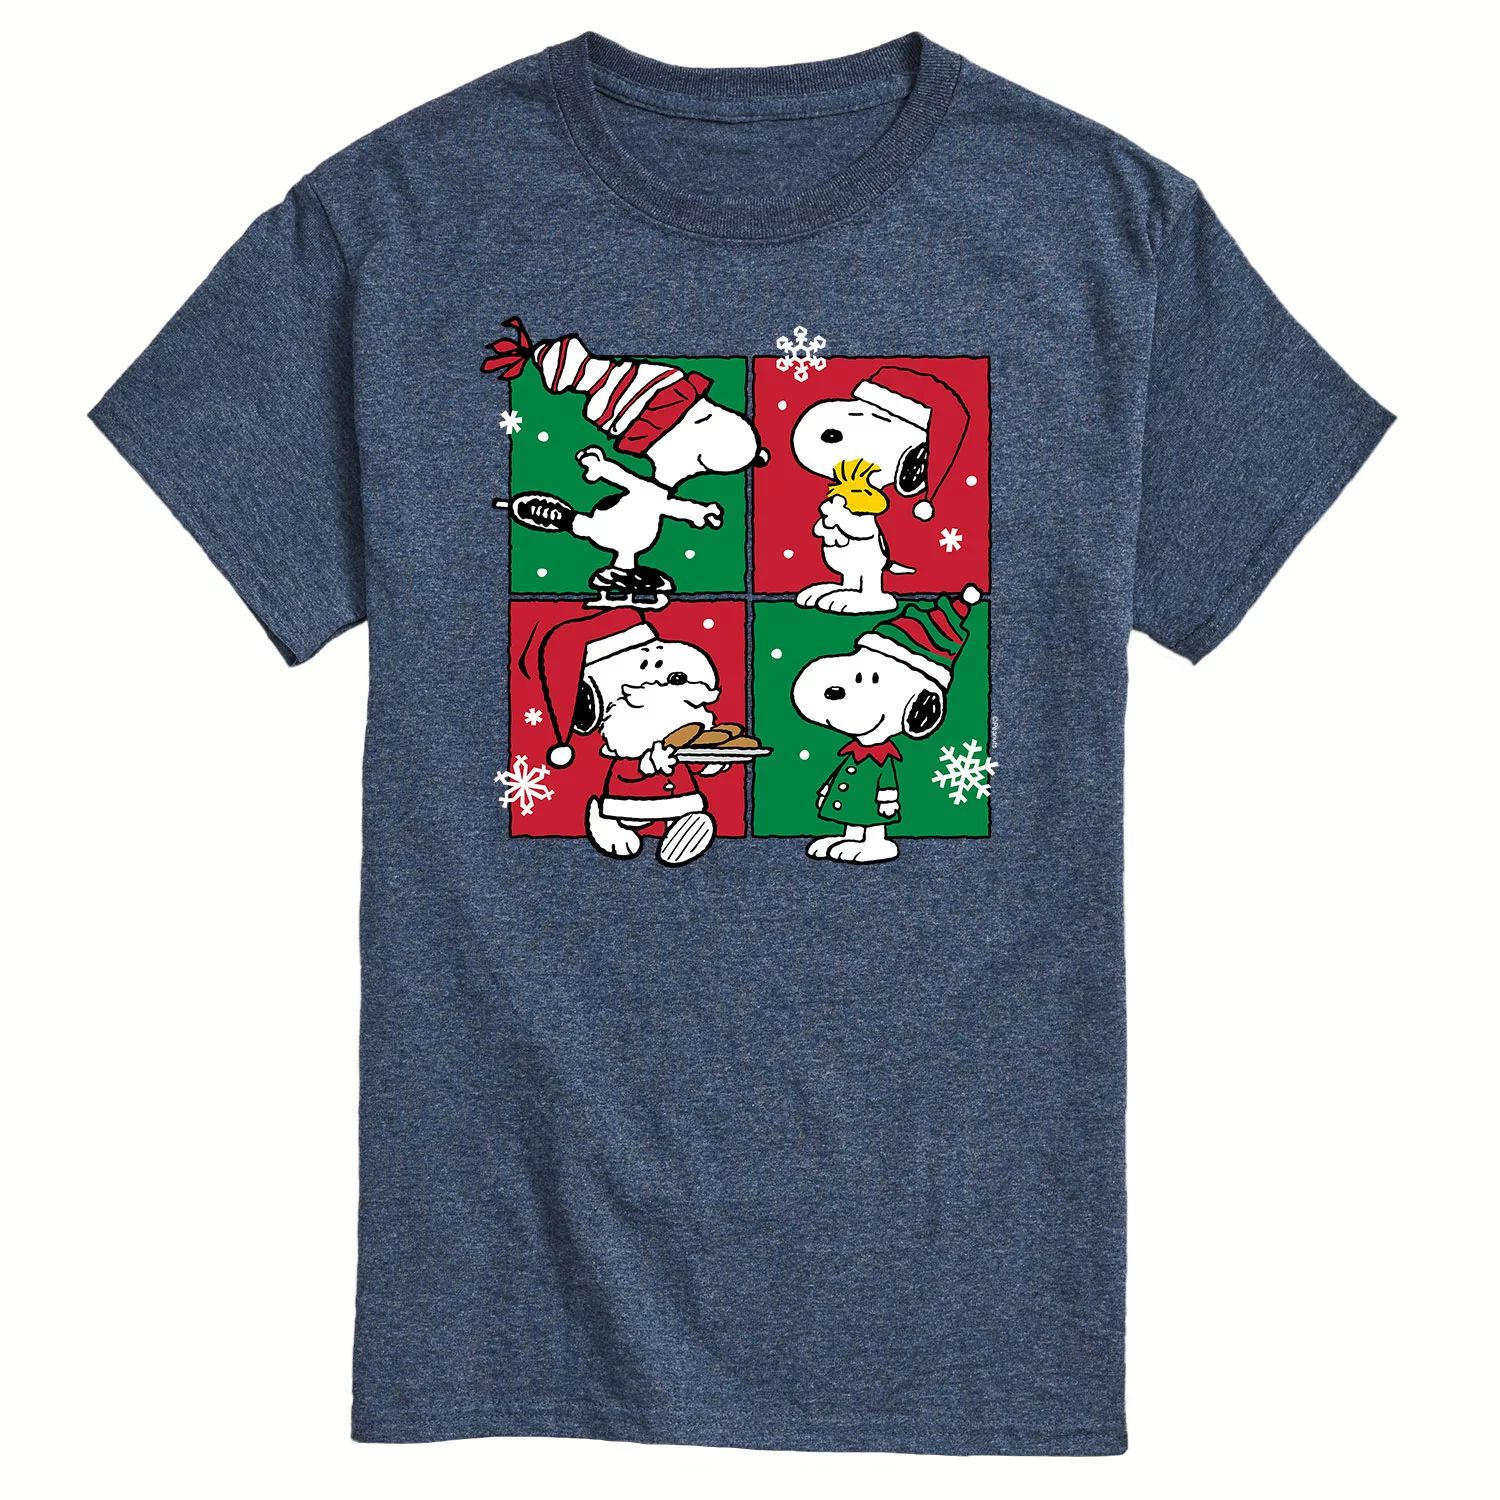 Мужская футболка с рождественской сеткой арахисового цвета Licensed Character